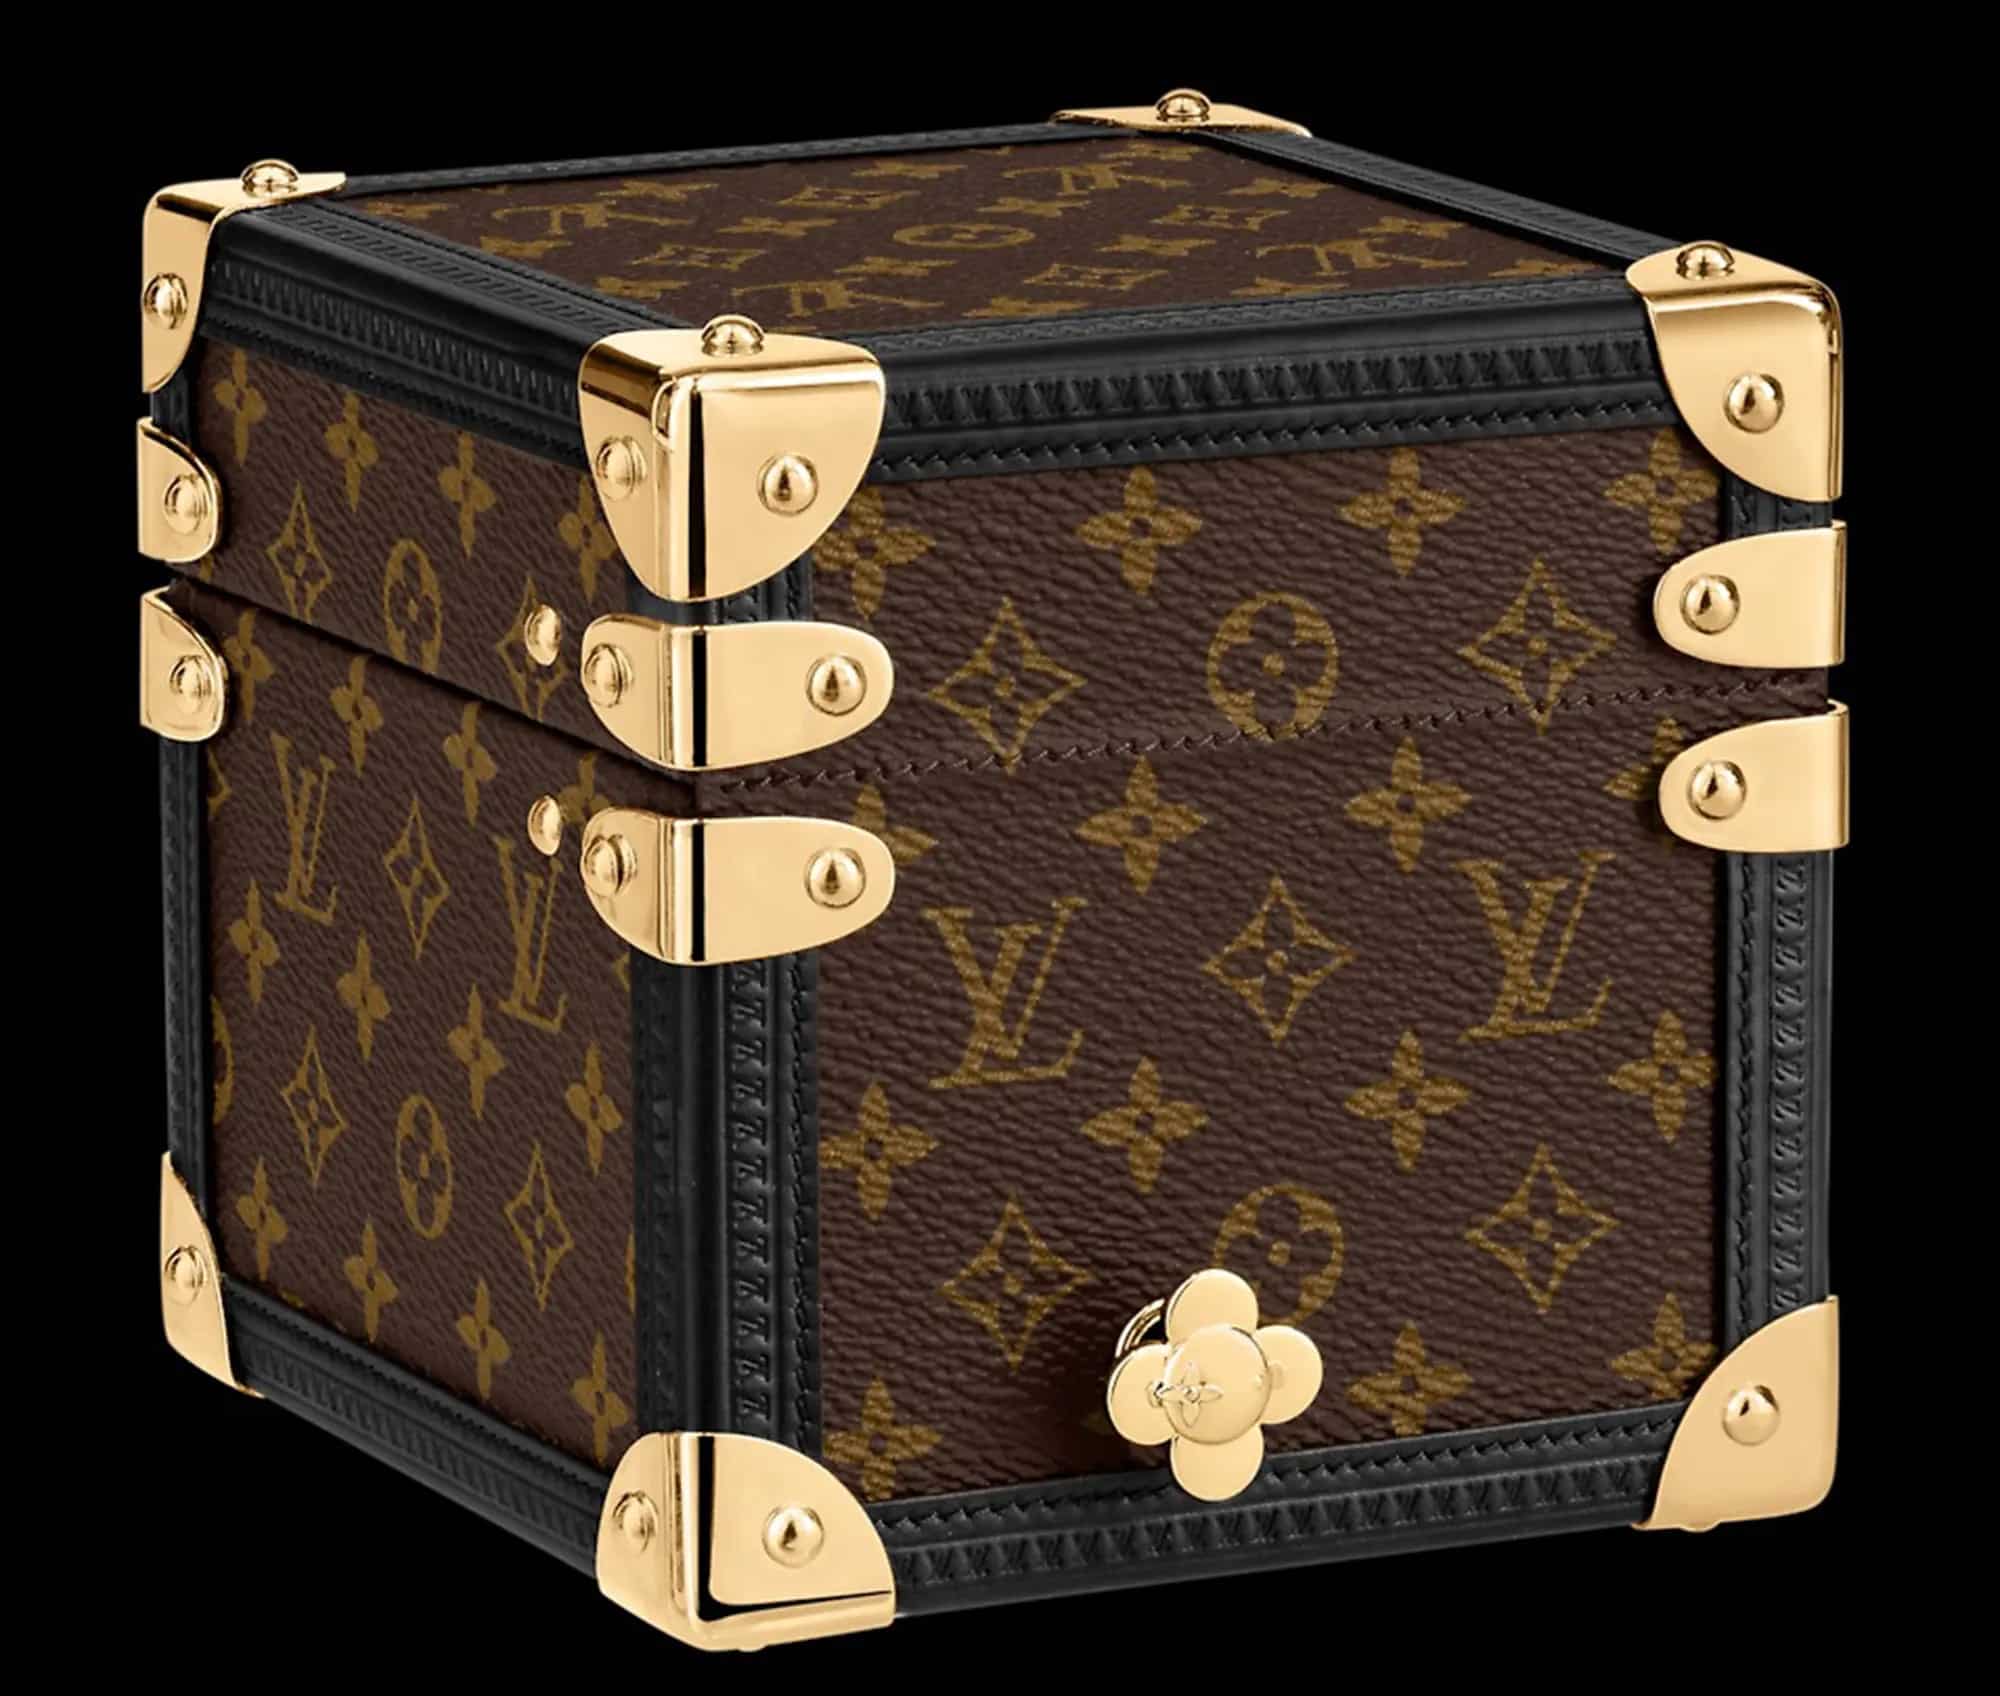 Louis Vuitton Vivienne Music Box Acceptable